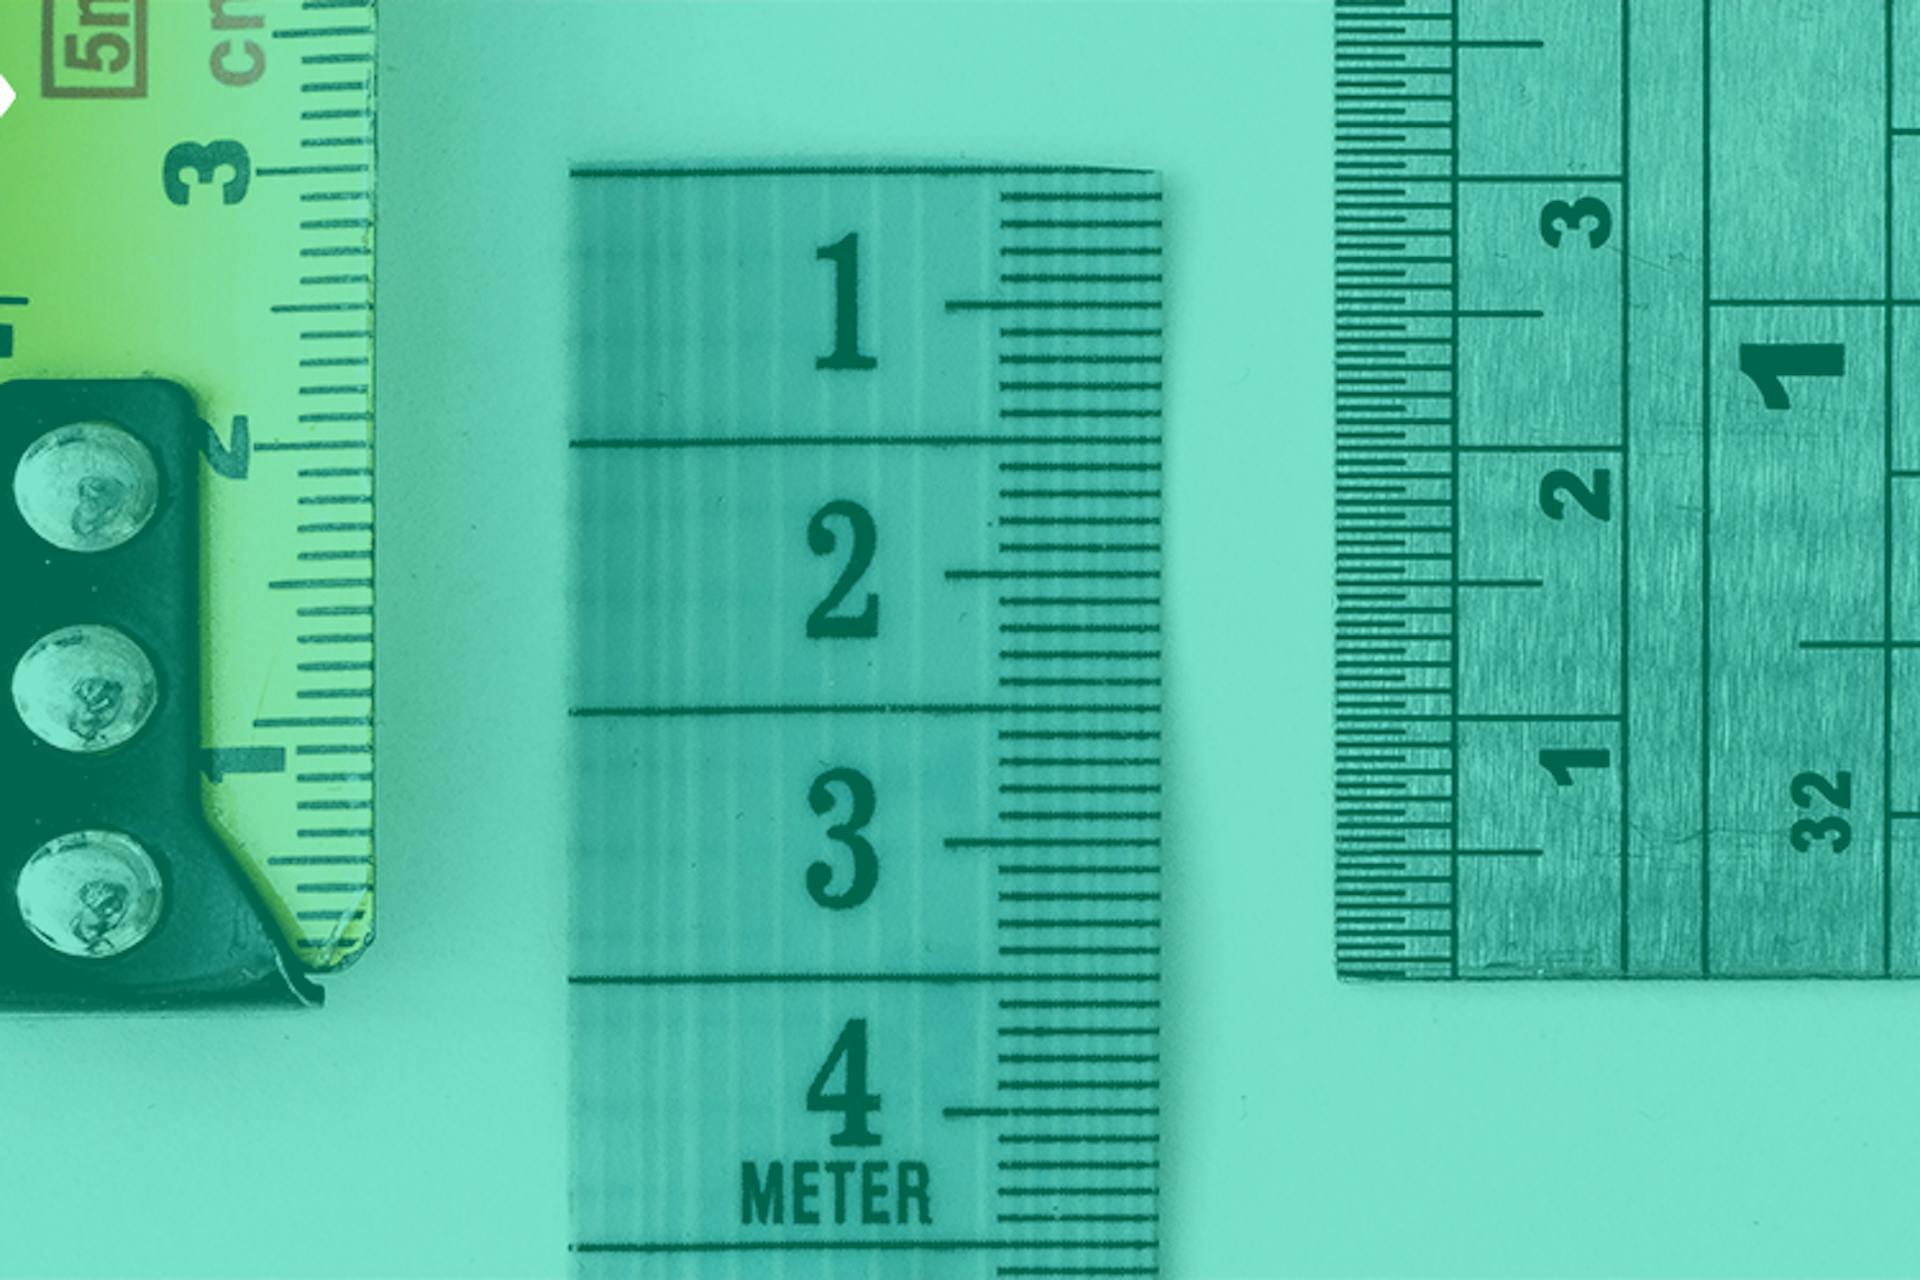 Metric - measure 